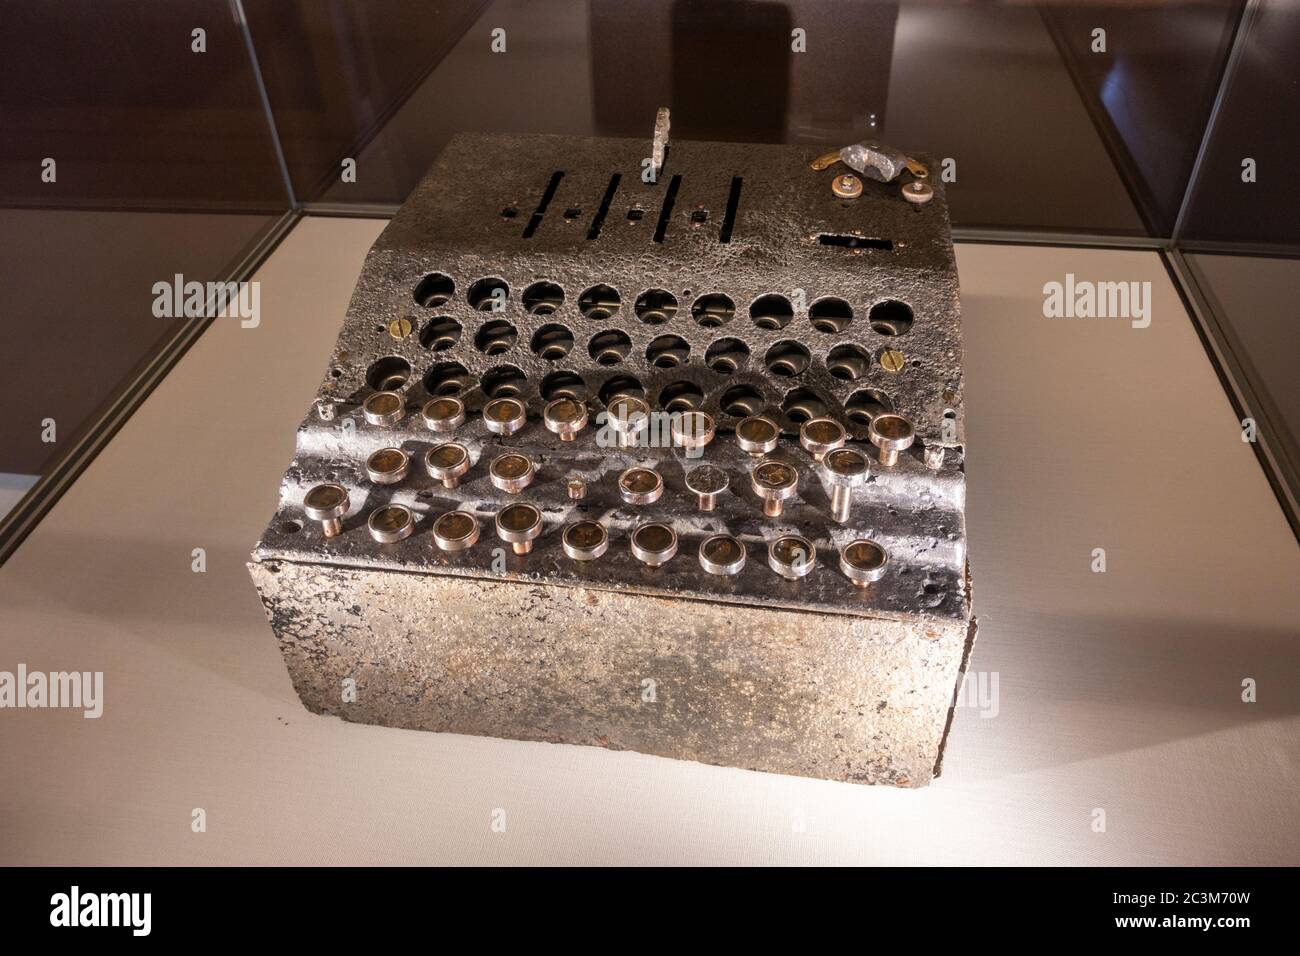 Ein Enigma oder G31 (Nr. G-110) Deutsche Chiffriermaschine auf dem Display in Bletchley Park, Bletchley. Buckinghamshire, Großbritannien. Stockfoto